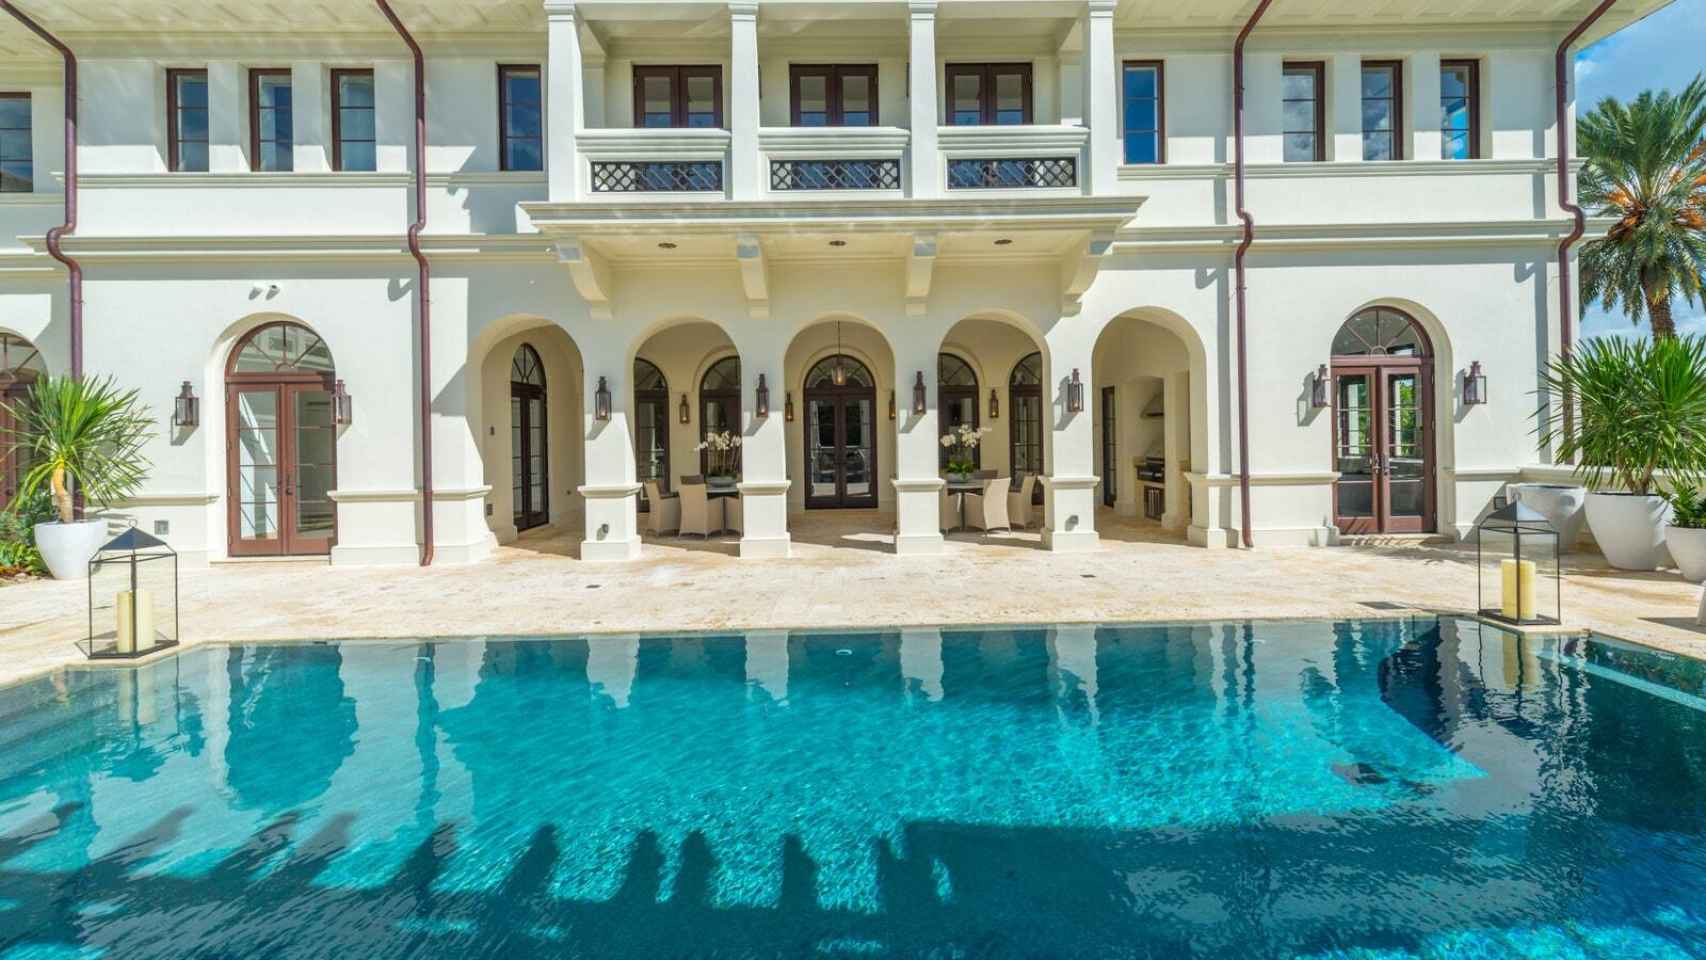 La mansión dispone de piscina climatizada y spa.